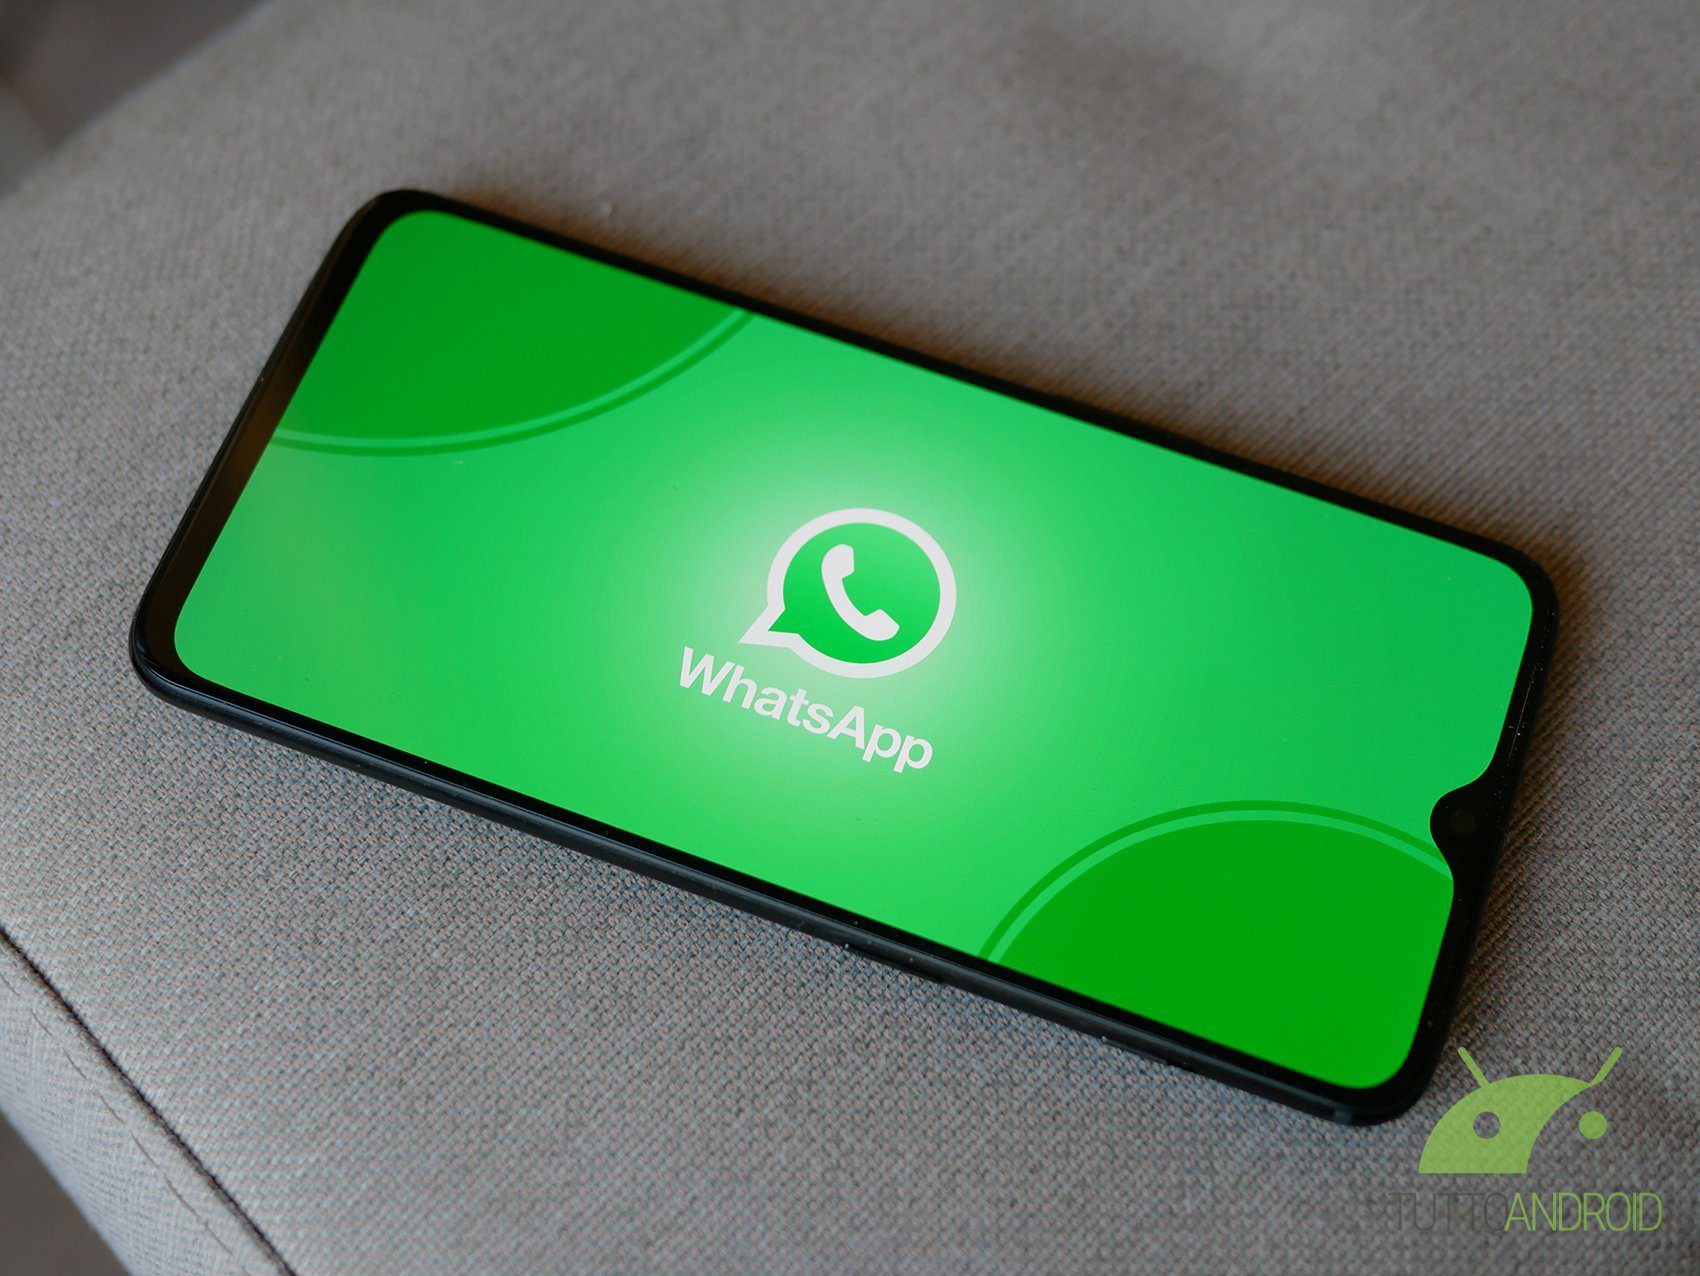 WhatsApp: روابط للمكالمات الجماعية المشفرة ومكالمات الفيديو قادمة 1